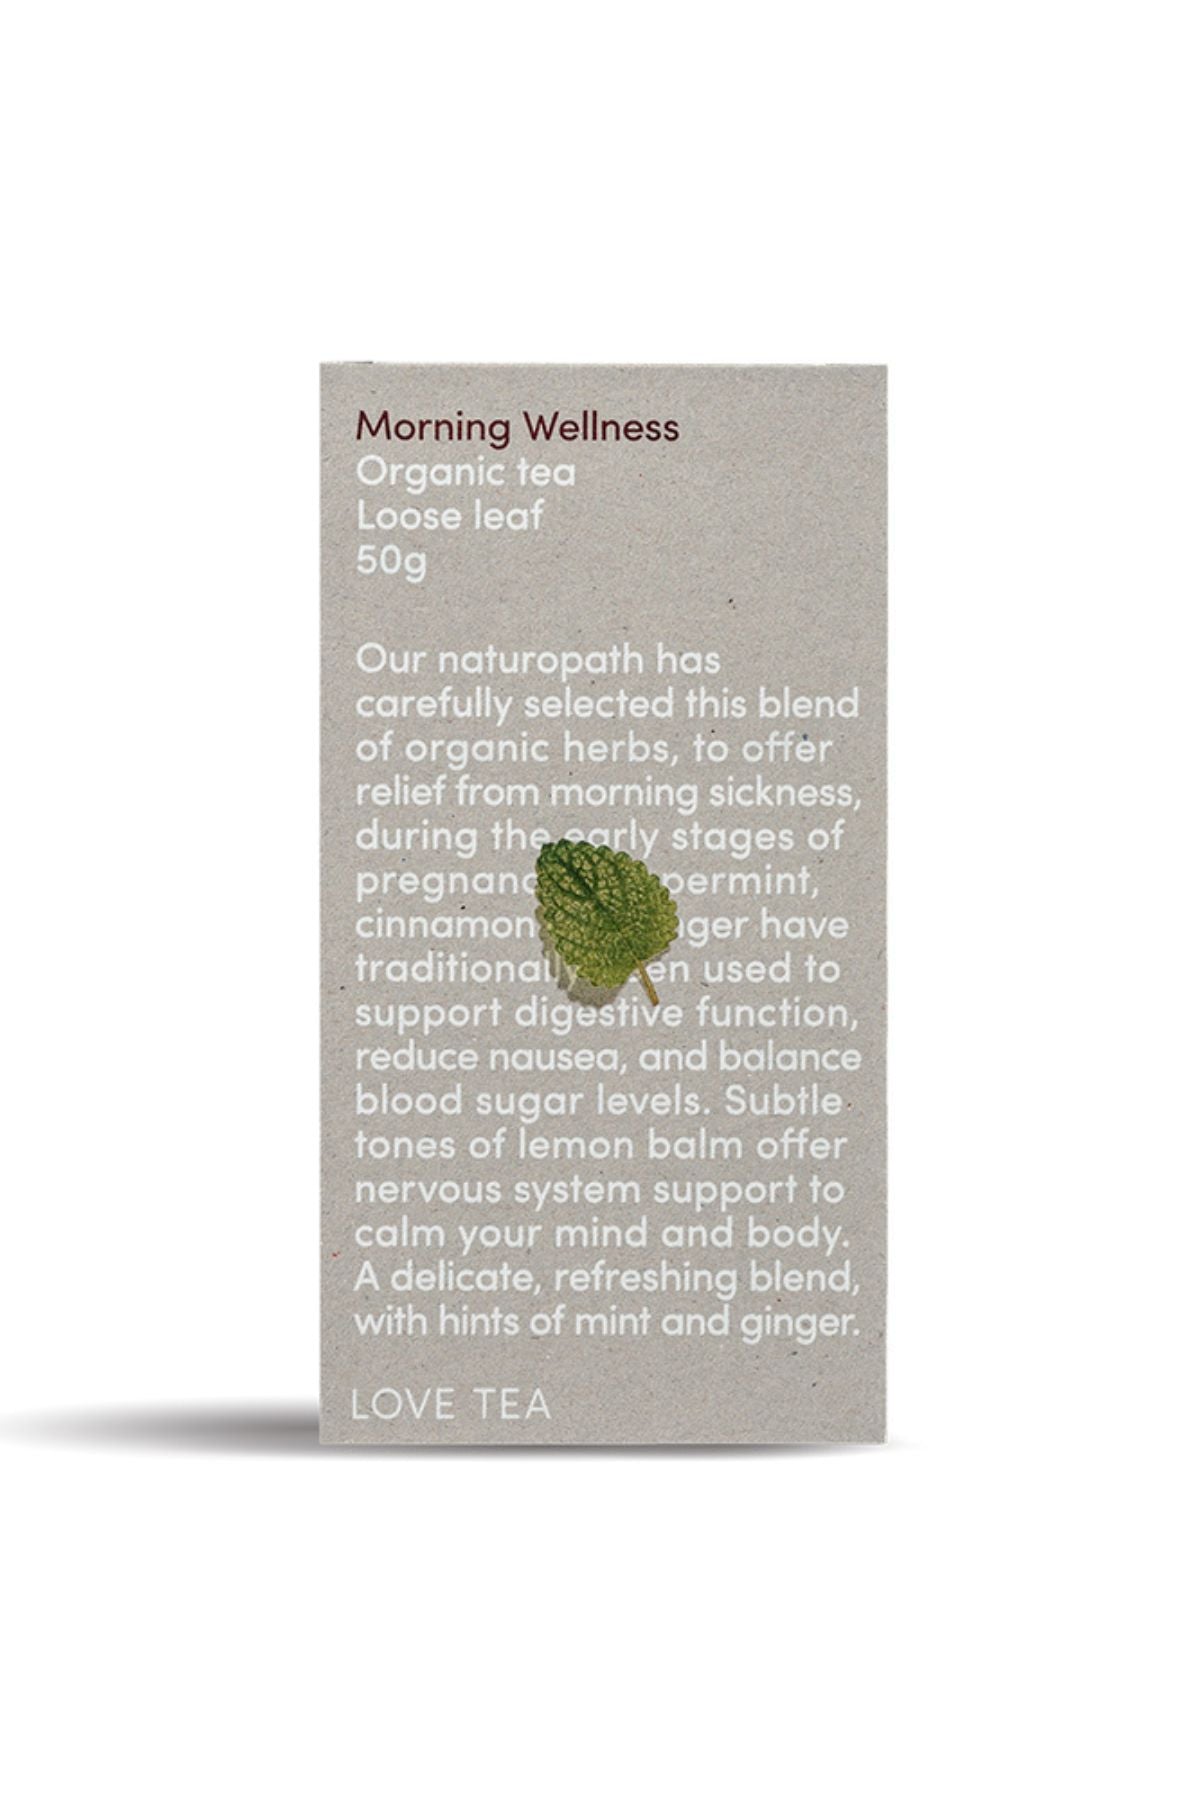 Morning Wellness Tea Loose Leaf Box 50g Love Tea